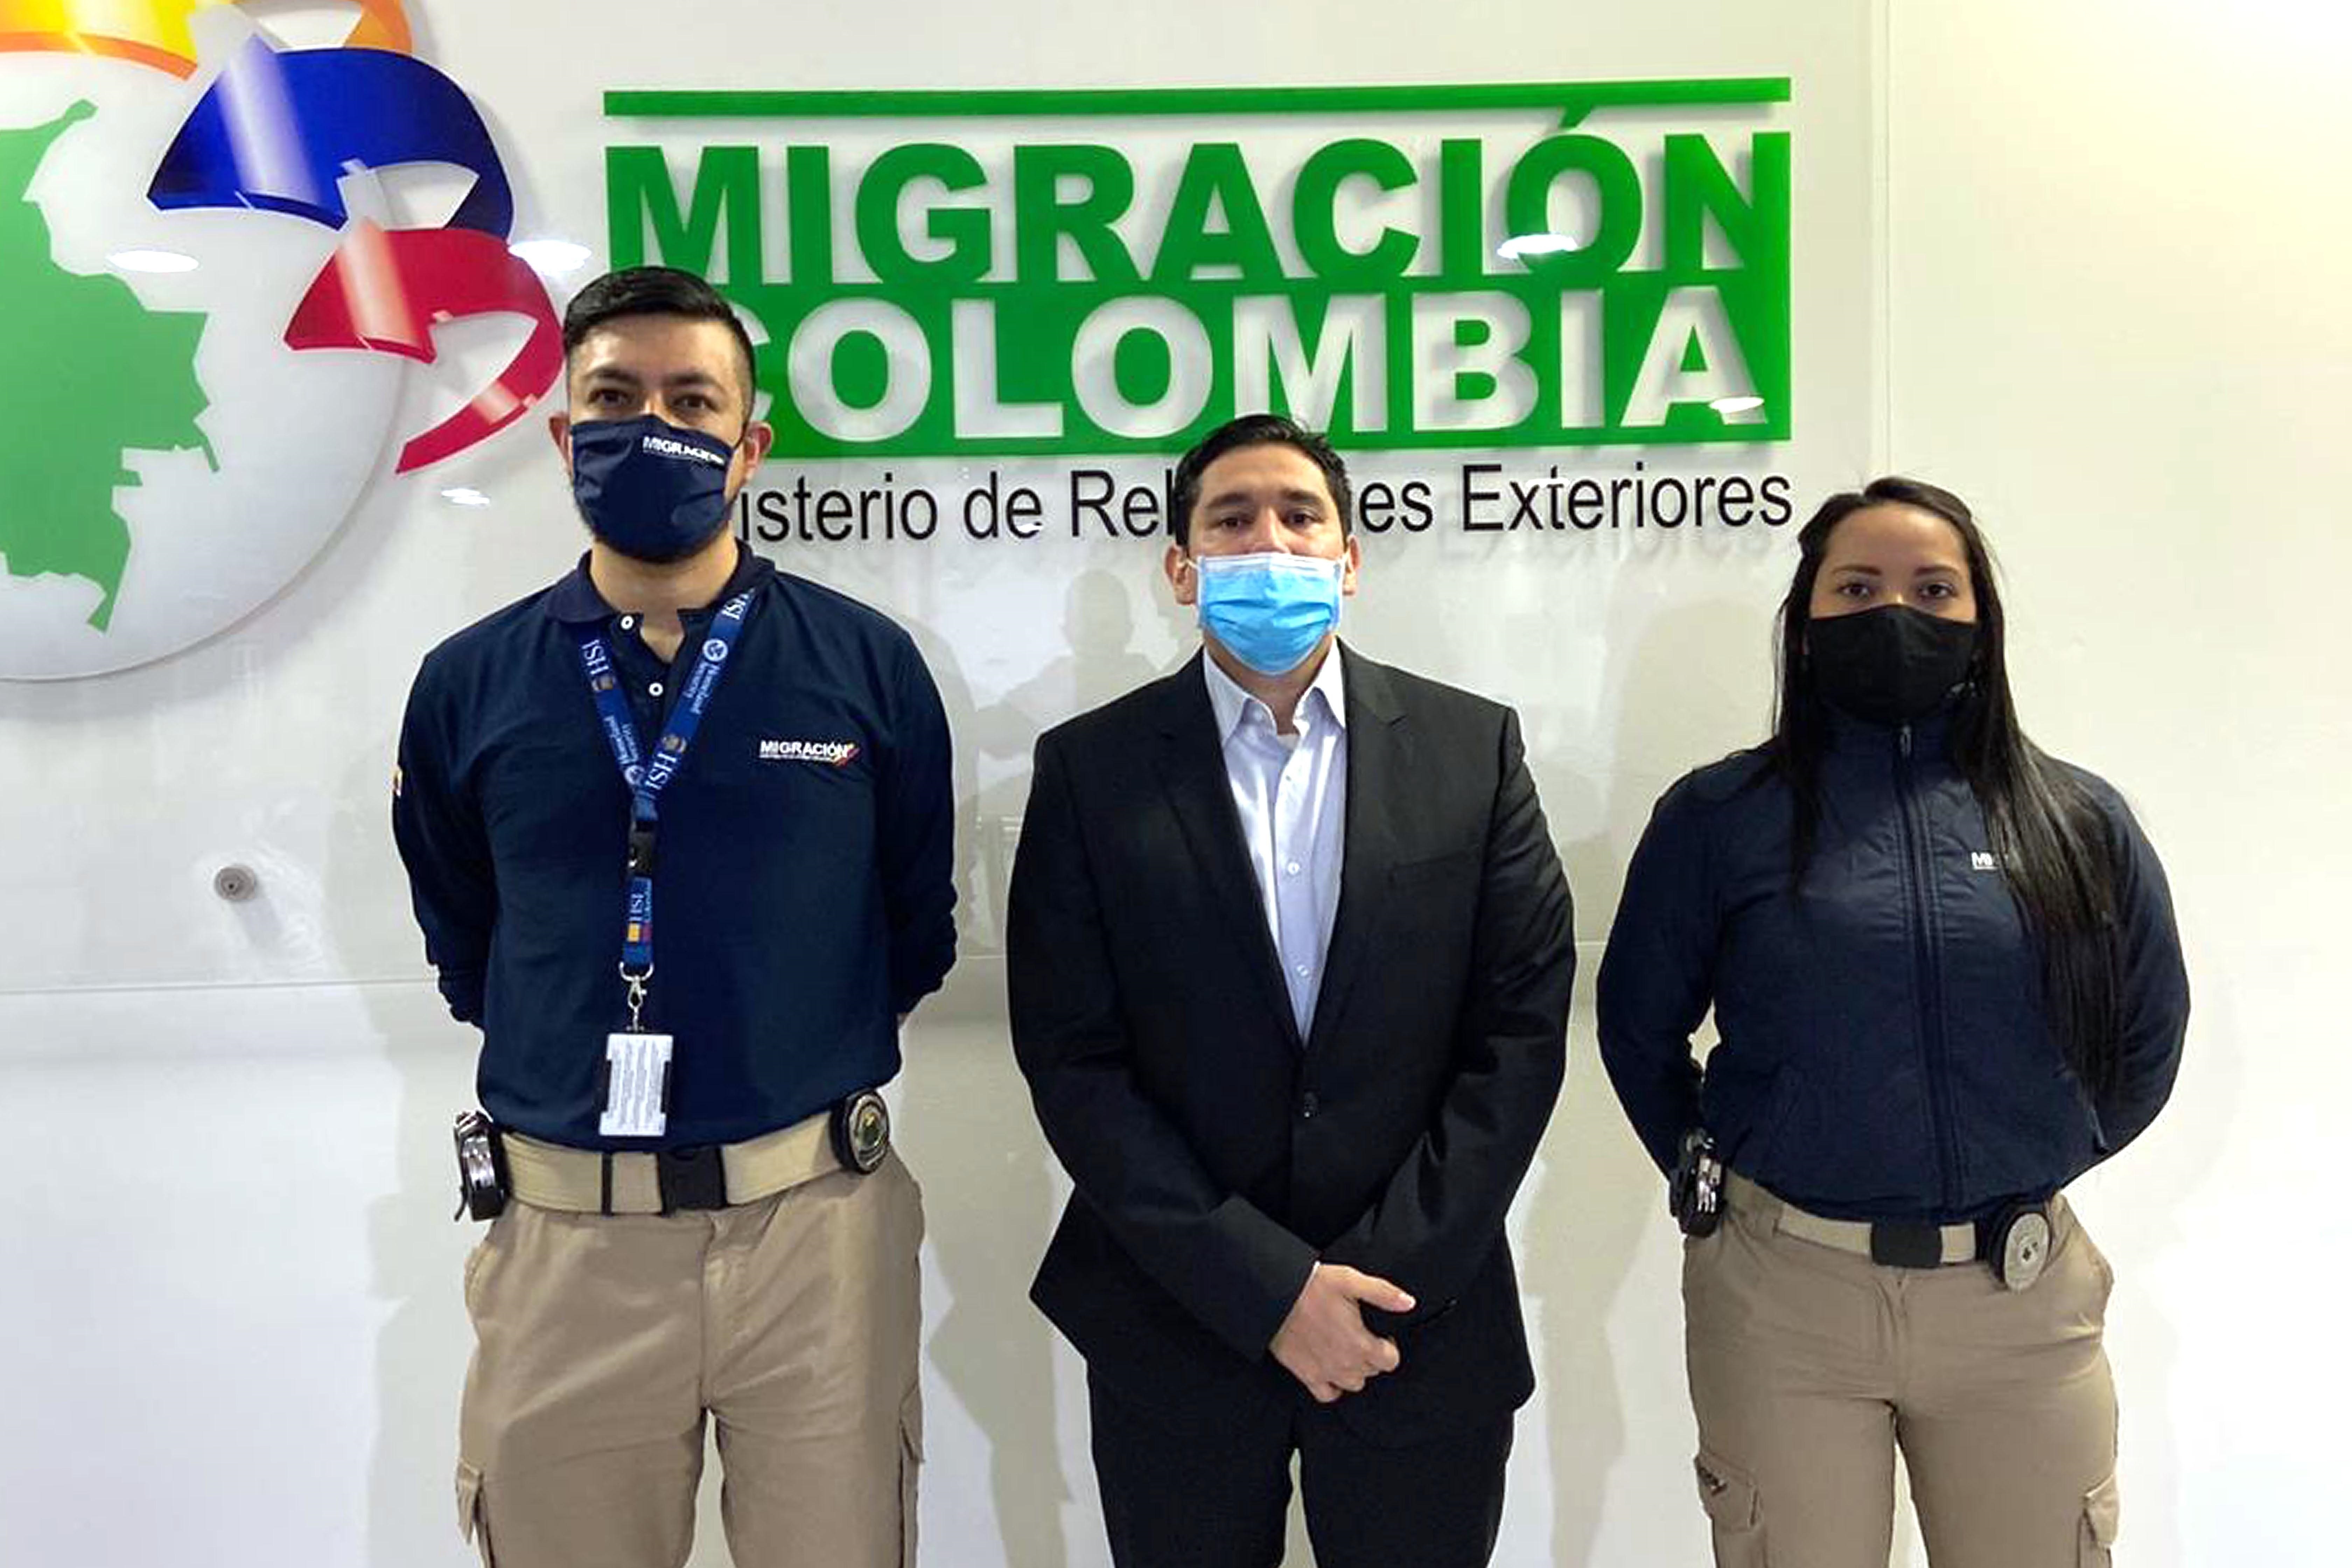 Fotografía cedida por Migración Colombia que muestra al exfiscal anticorrupción de Colombia Luis Gustavo Moreno (c) tras su deportación desde EE.UU. hoy, en el aeropuerto internacional El Dorado de Bogotá (Colombia). EFE/Migración Colombia
